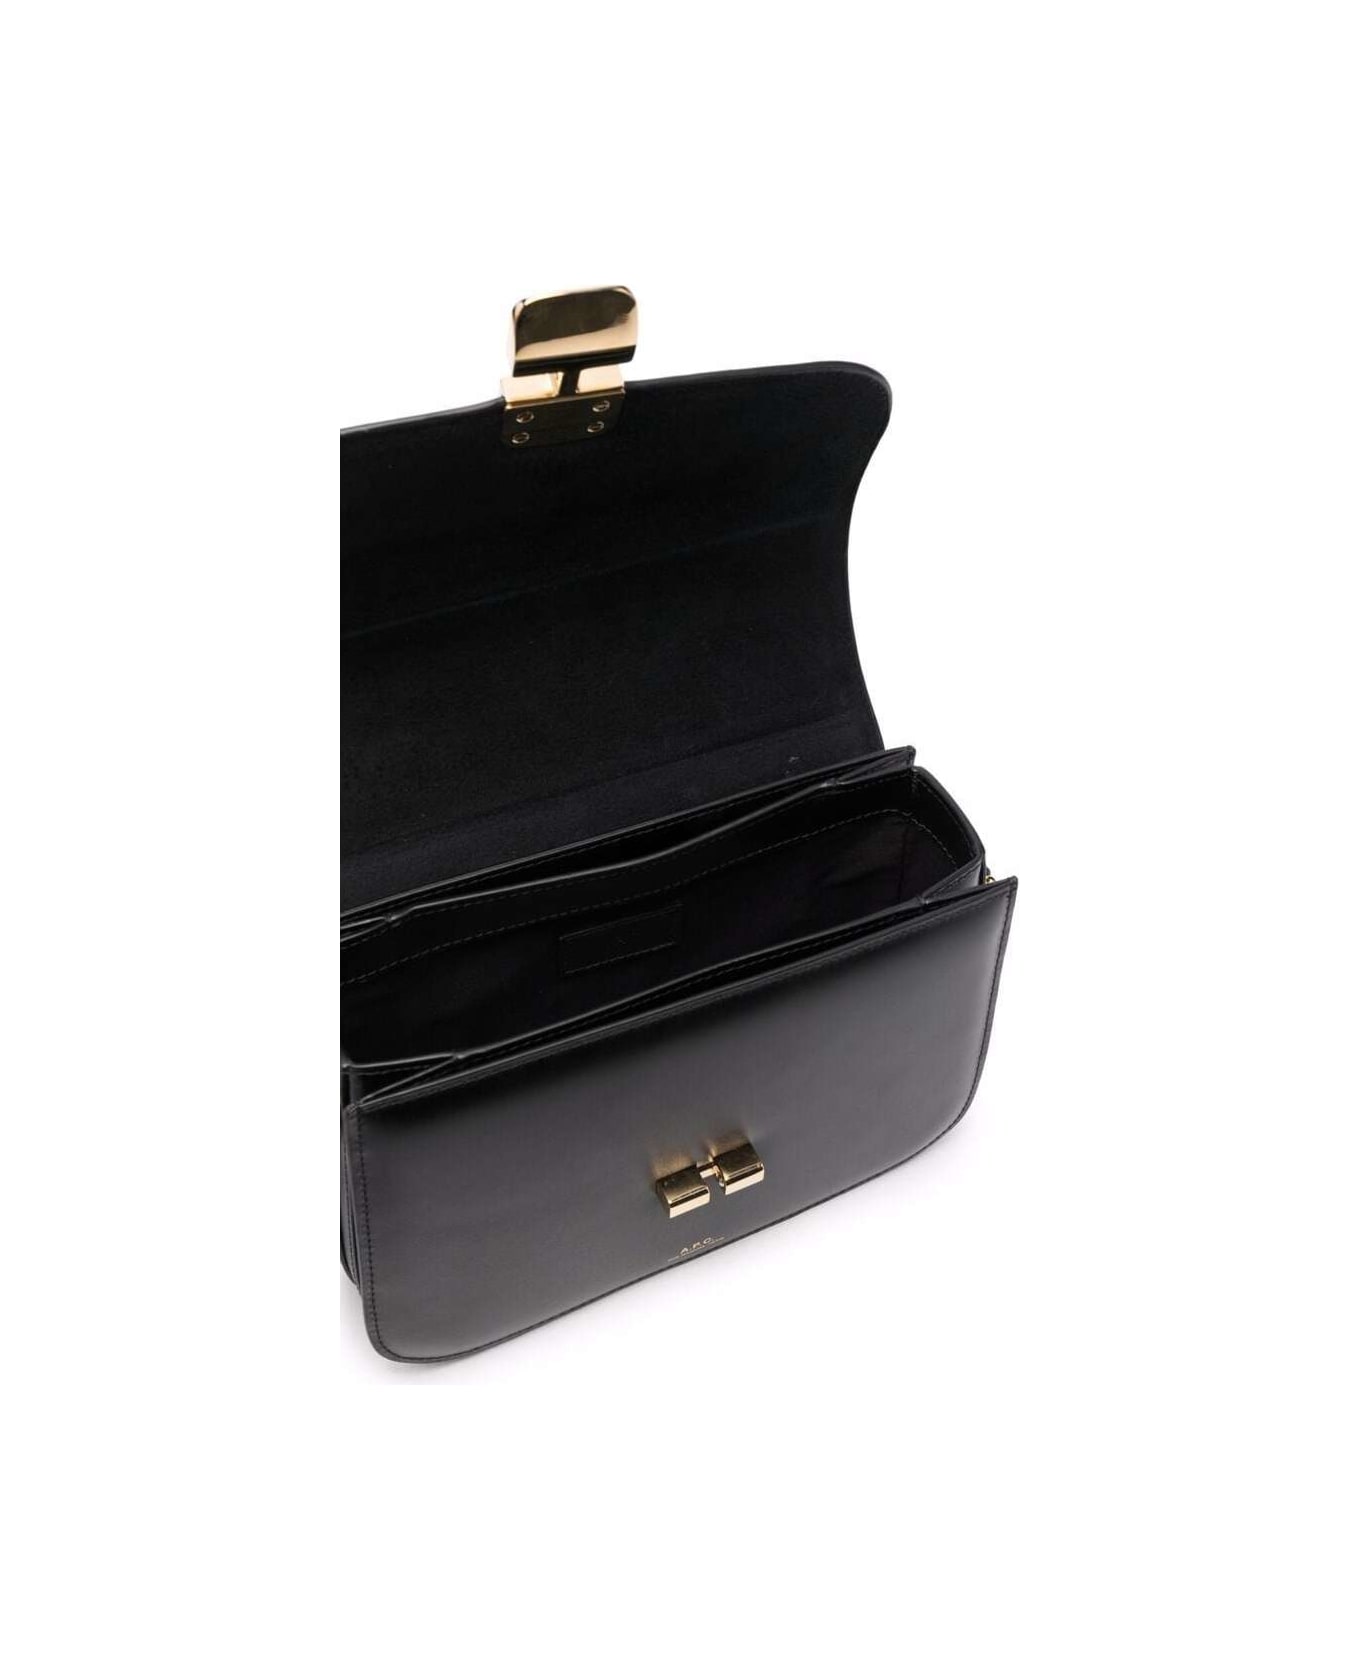 A.P.C. Black Bag In Genuine Leather With Gold Color Engraved Logo And Adjustable Shoulder Strap - Black